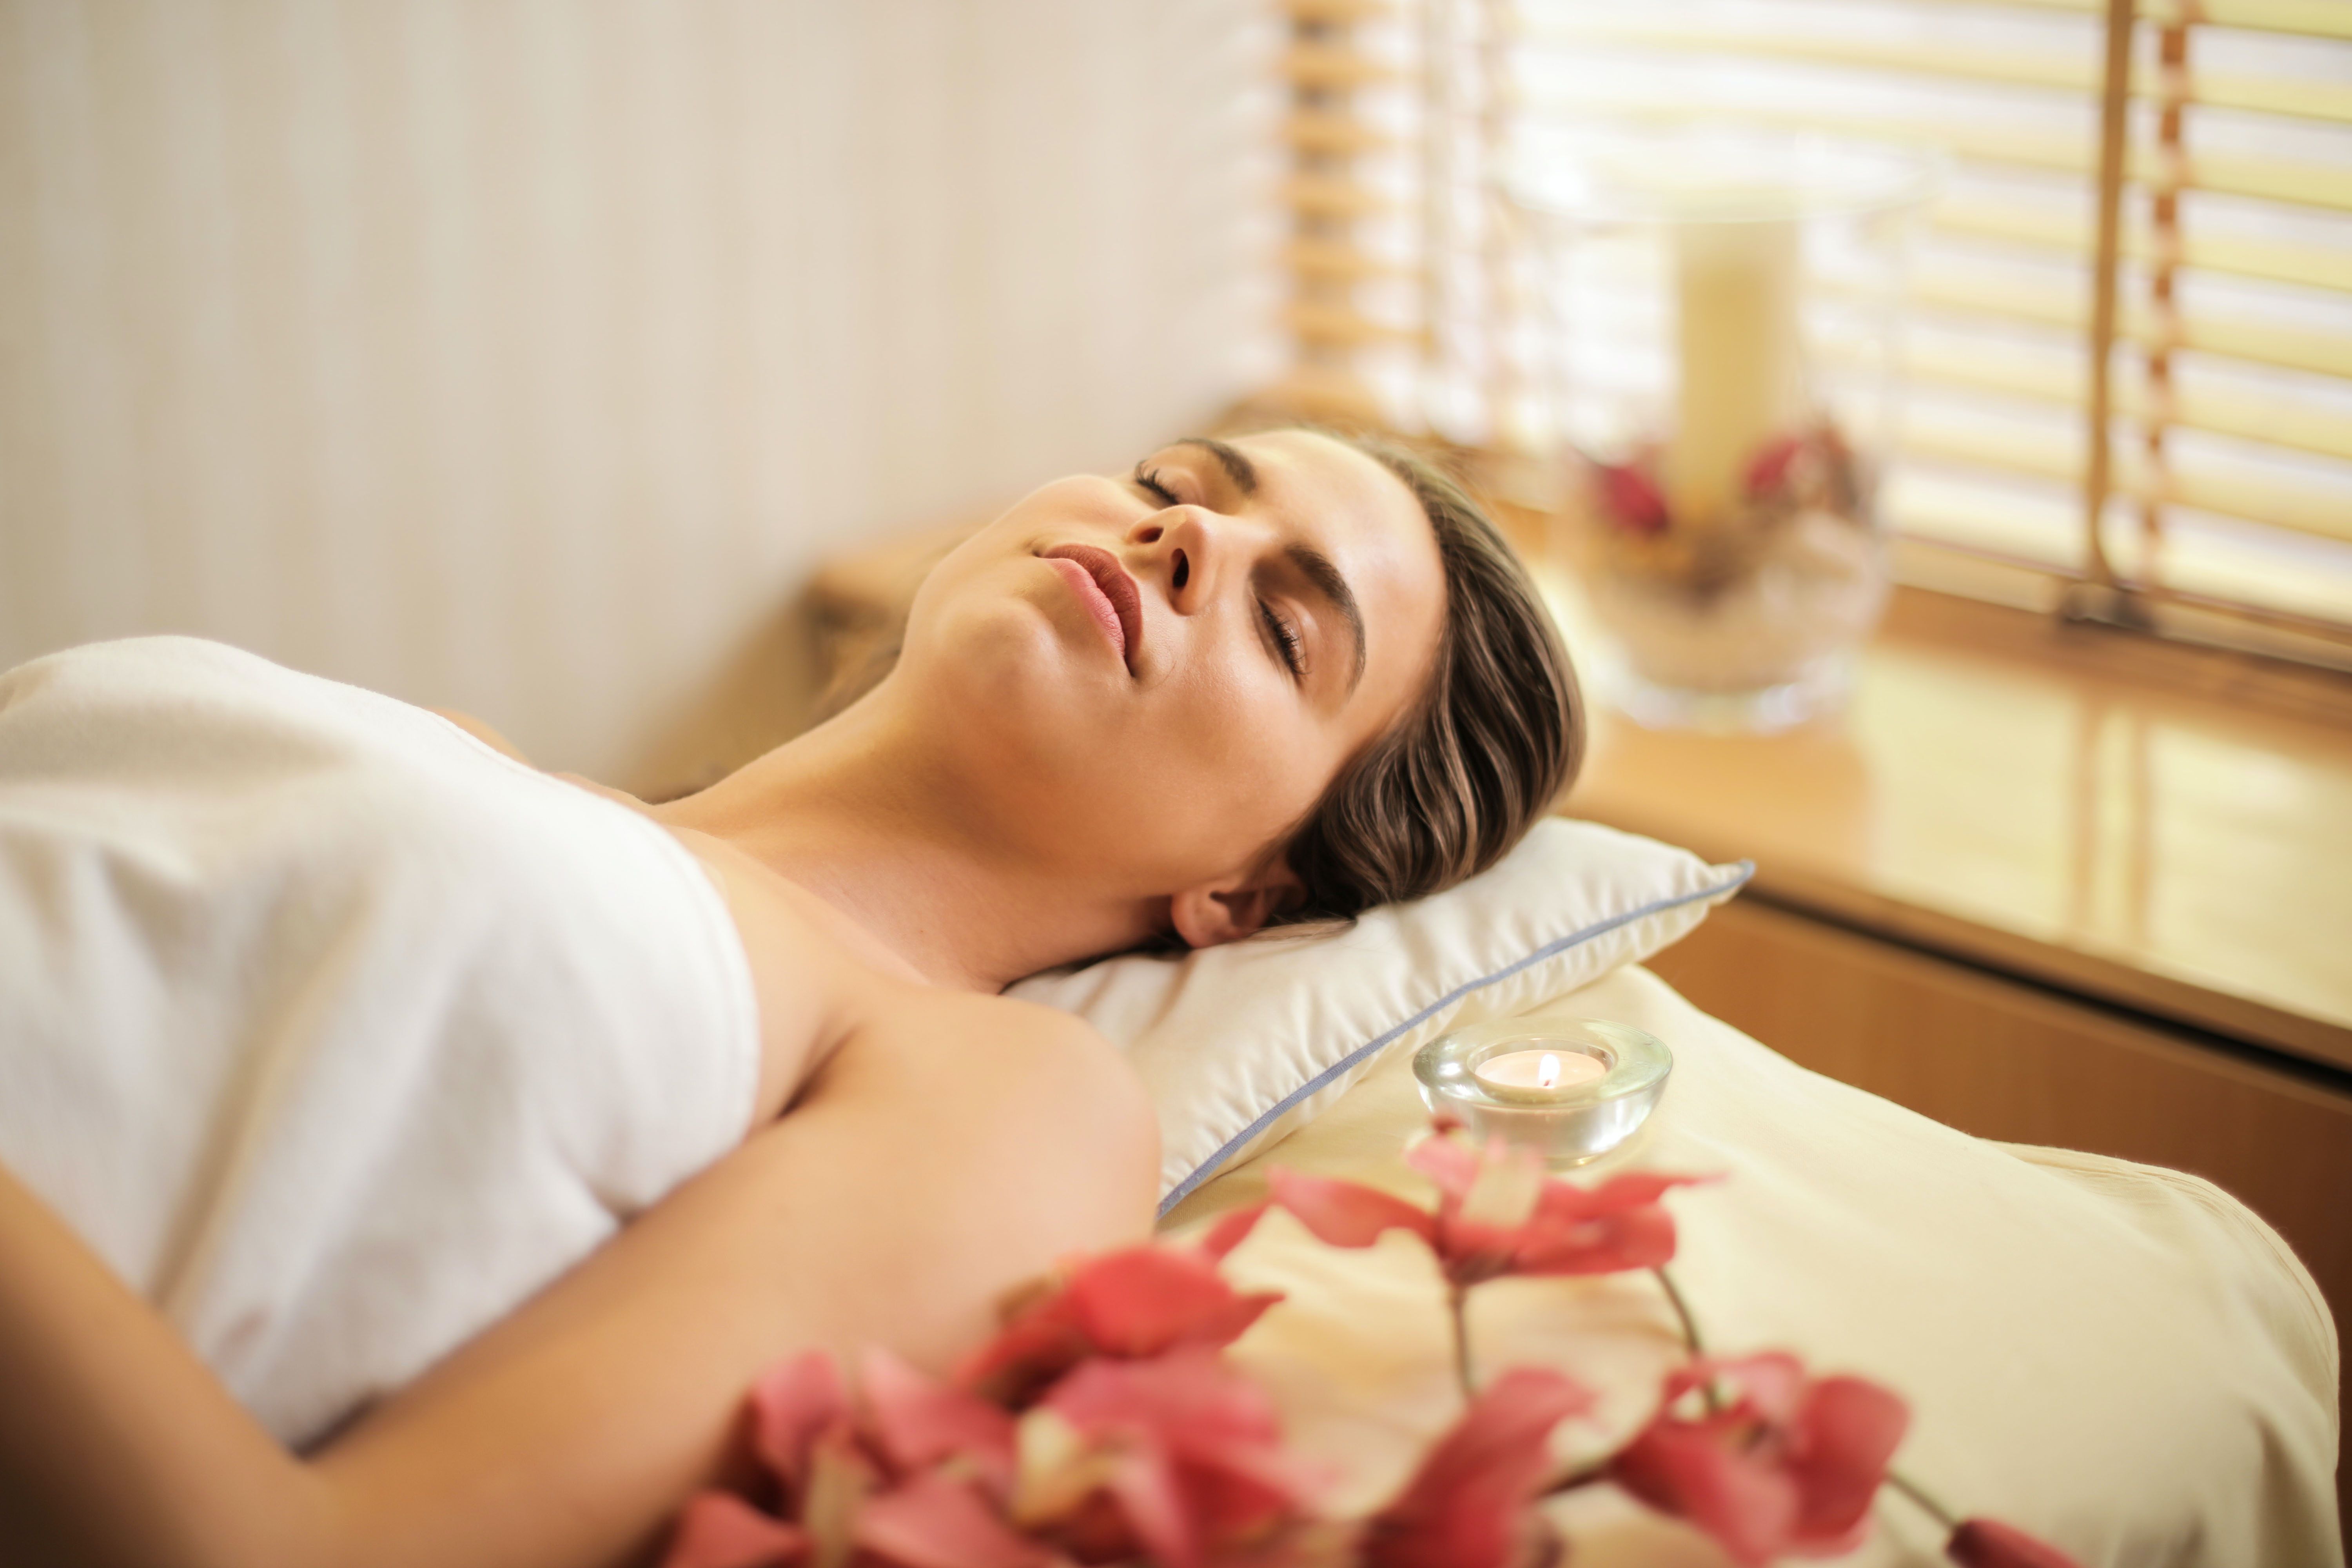 Therapeutic Massage Vs. Spa Massage